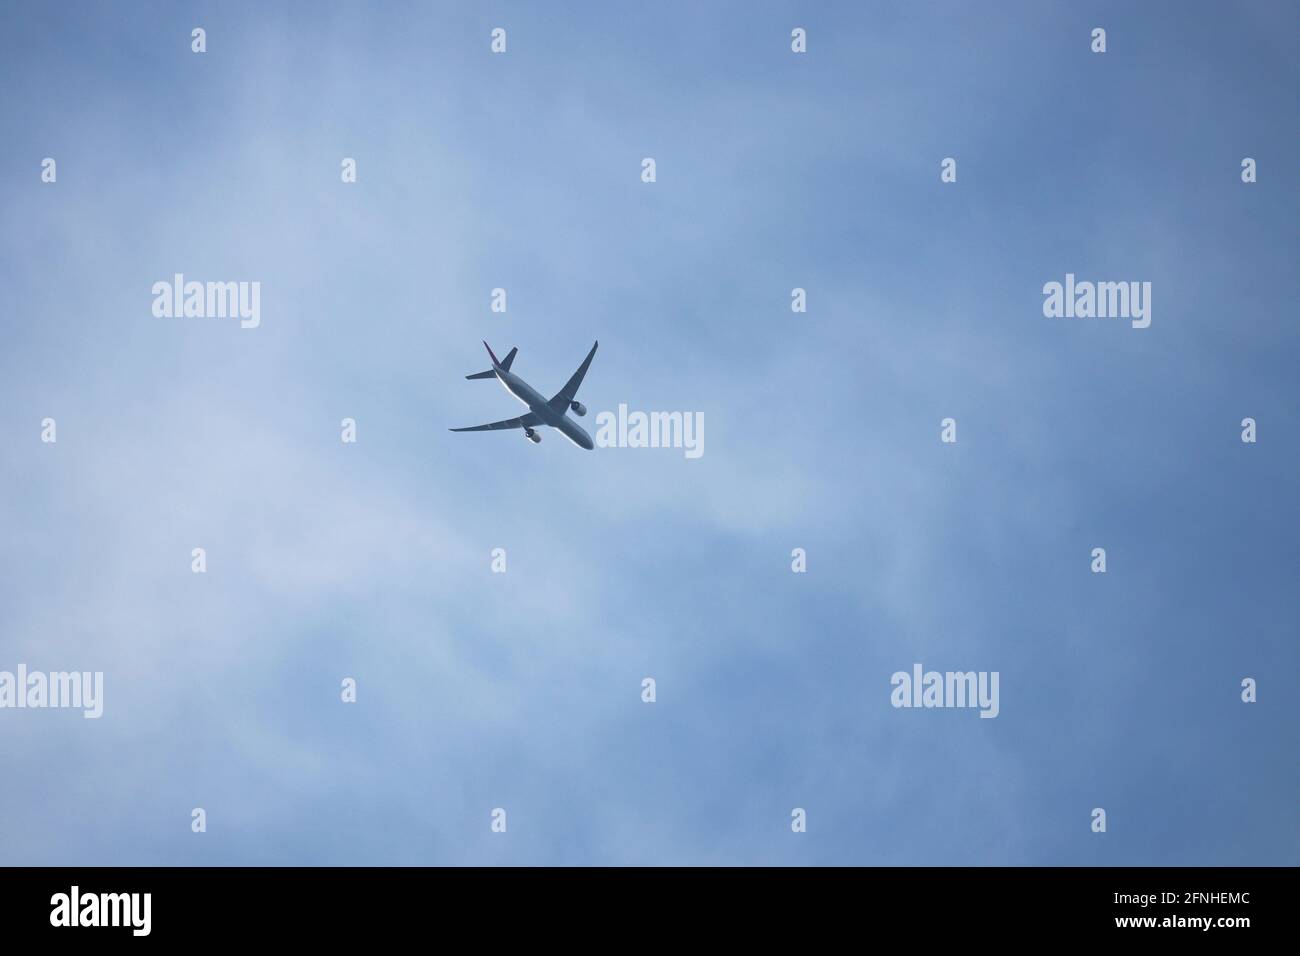 Avion volant dans le ciel bleu sur fond de nuages blancs. Concept d'avion commercial à deux moteurs, de turbulence et de déplacement Banque D'Images